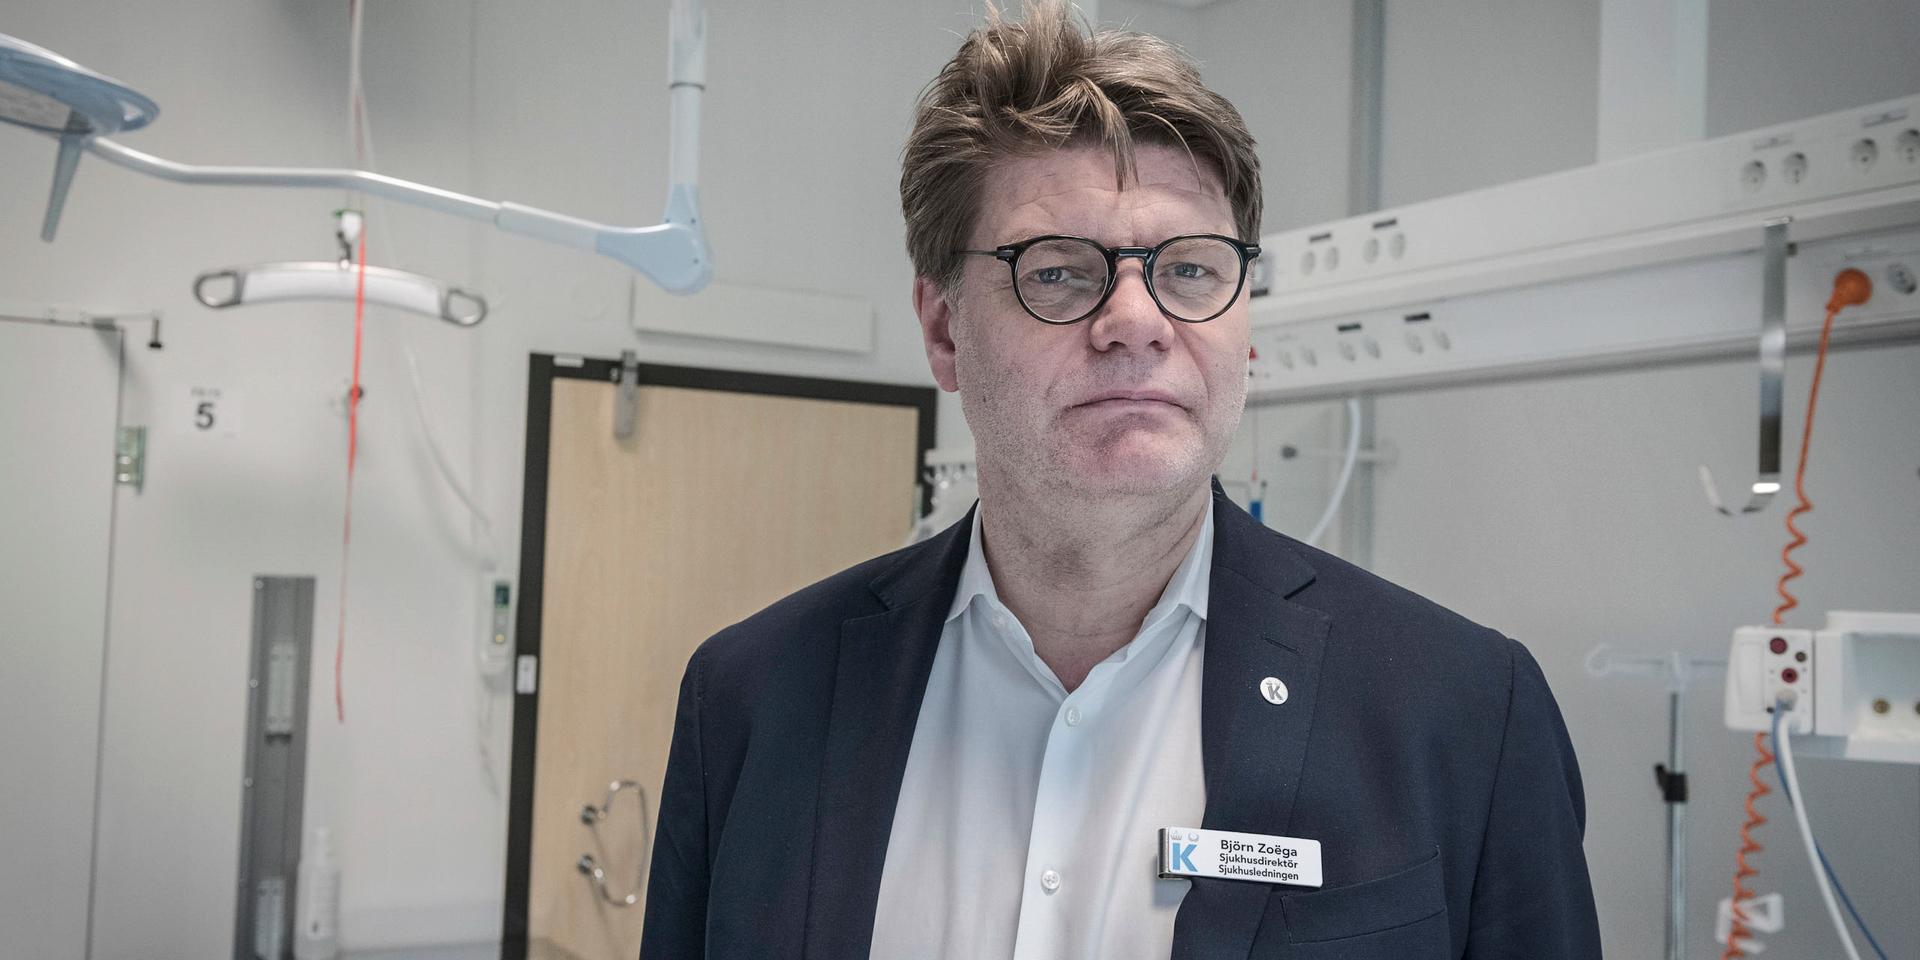 Björn Zoëga, sjukhusdirektör på Karolinska universitetssjukhuset, fick ifjol en lönehöjning på 12 procent.